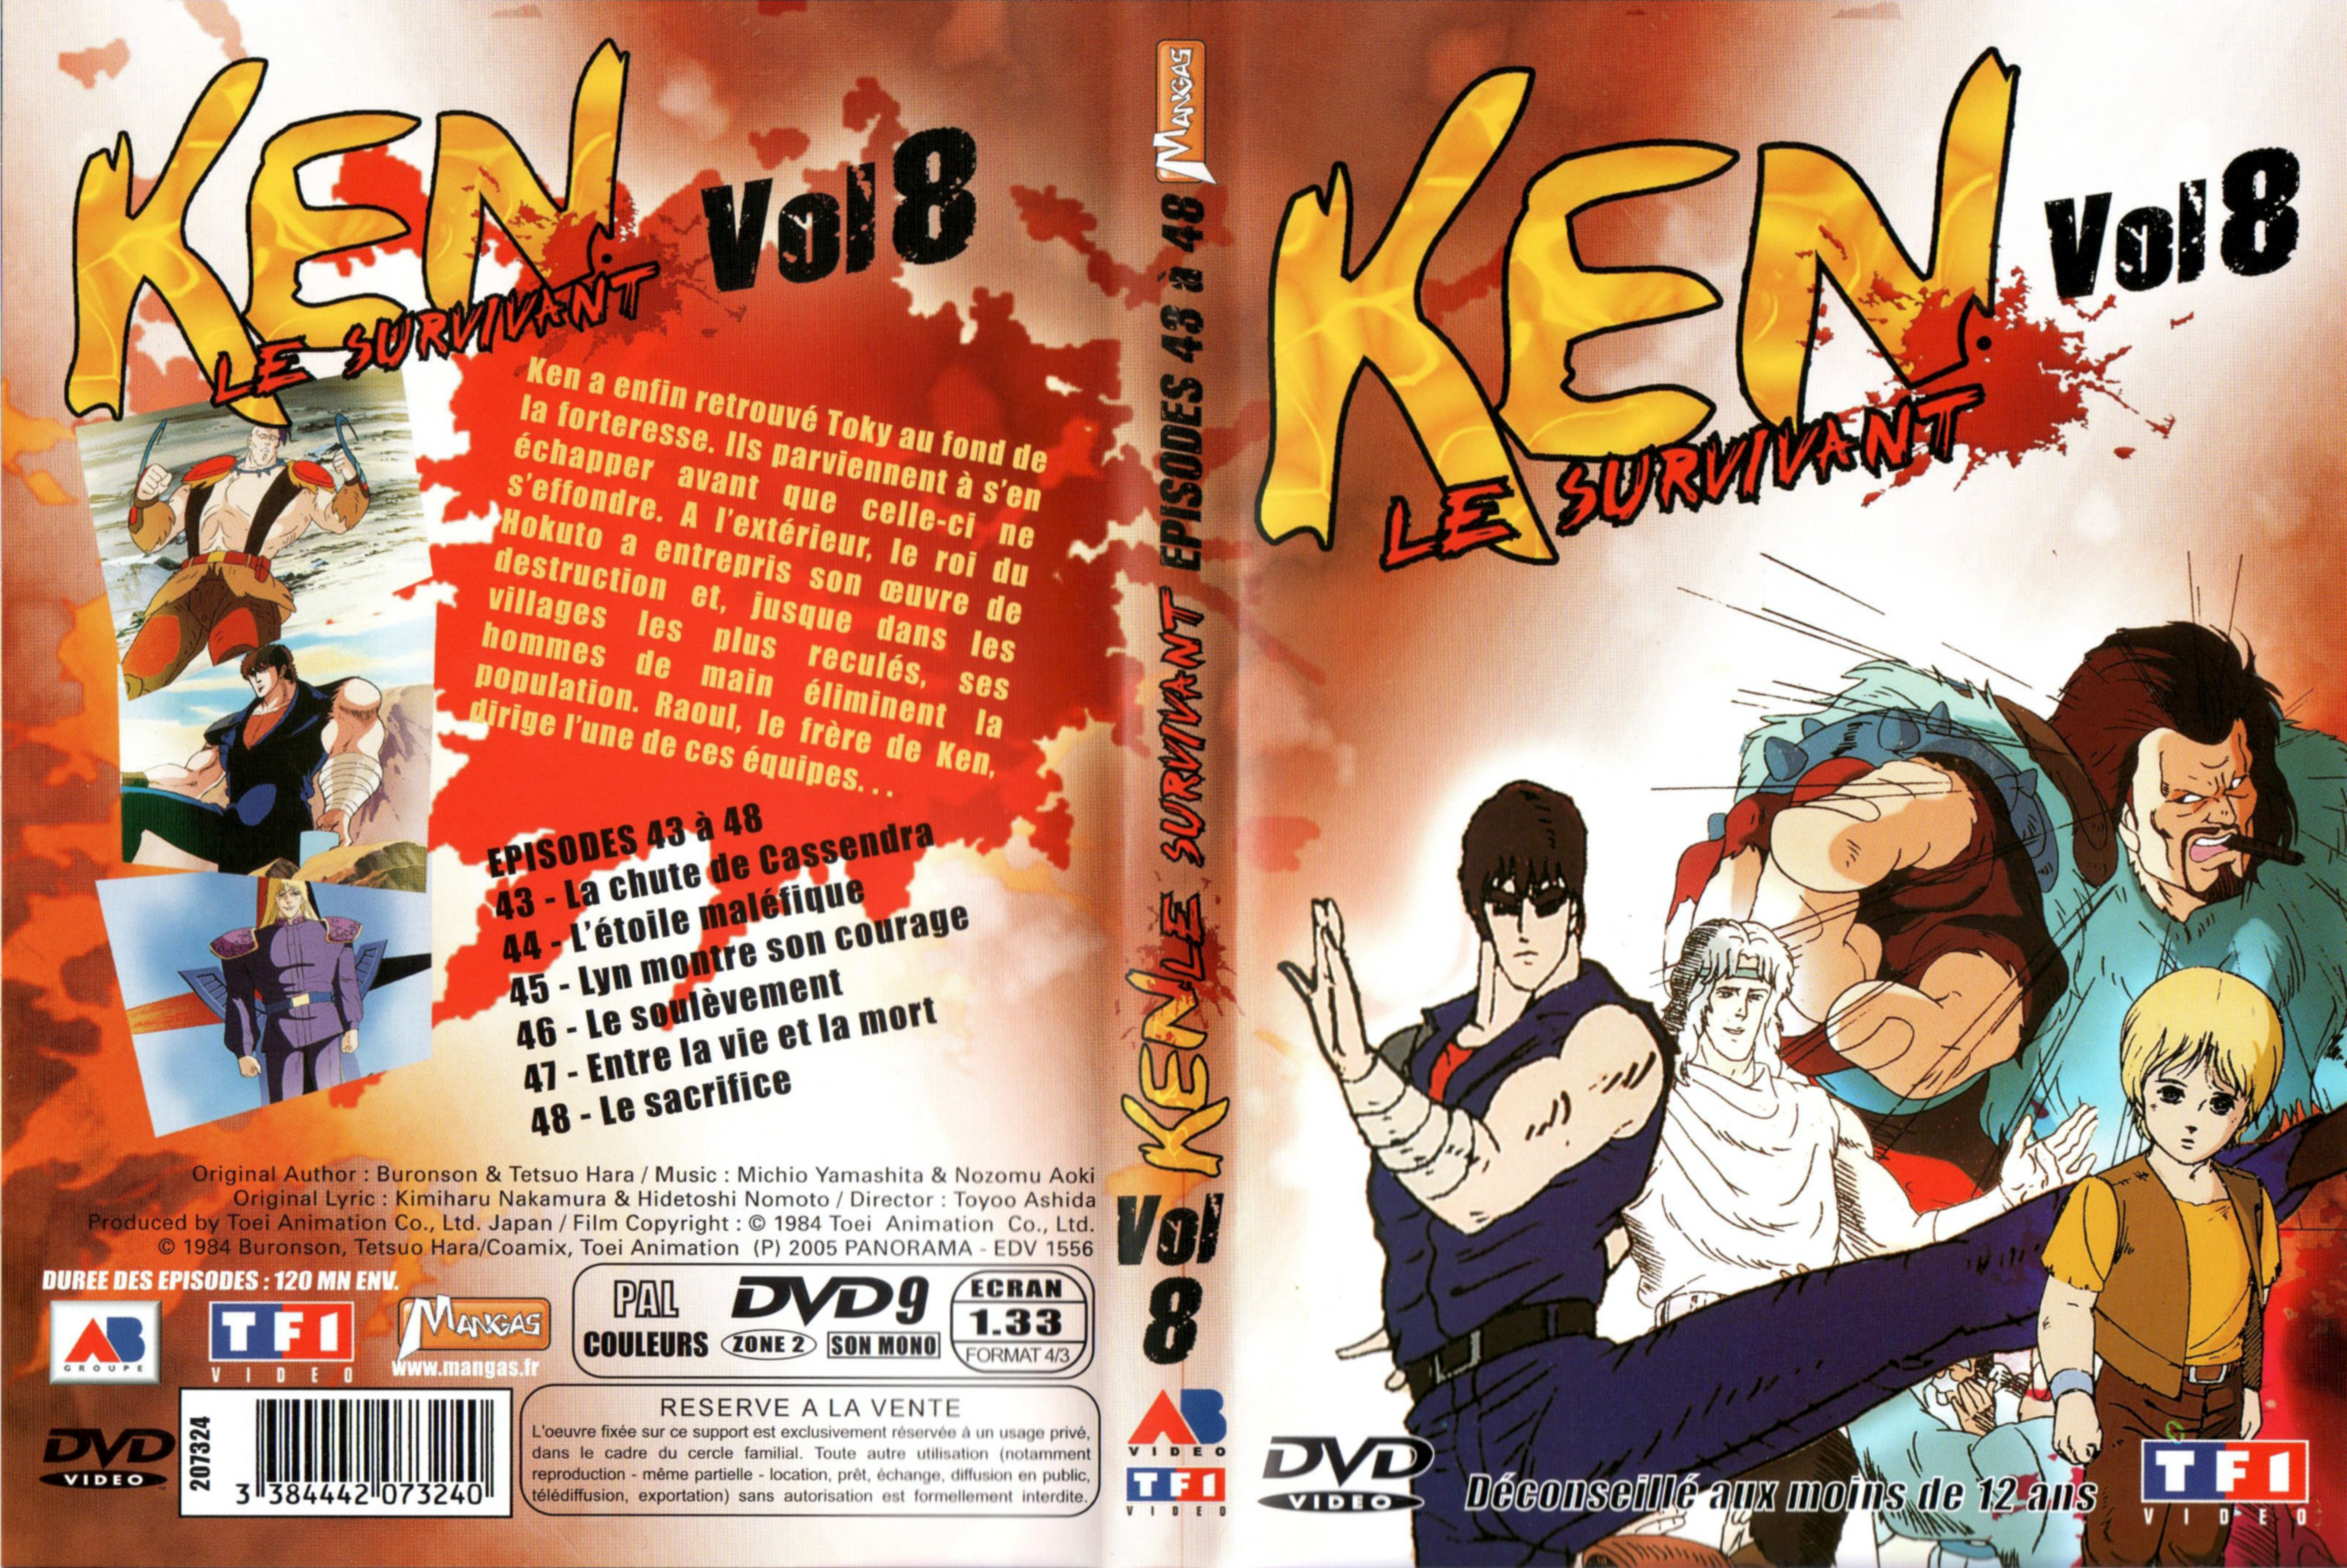 Jaquette DVD Ken le survivant vol 8